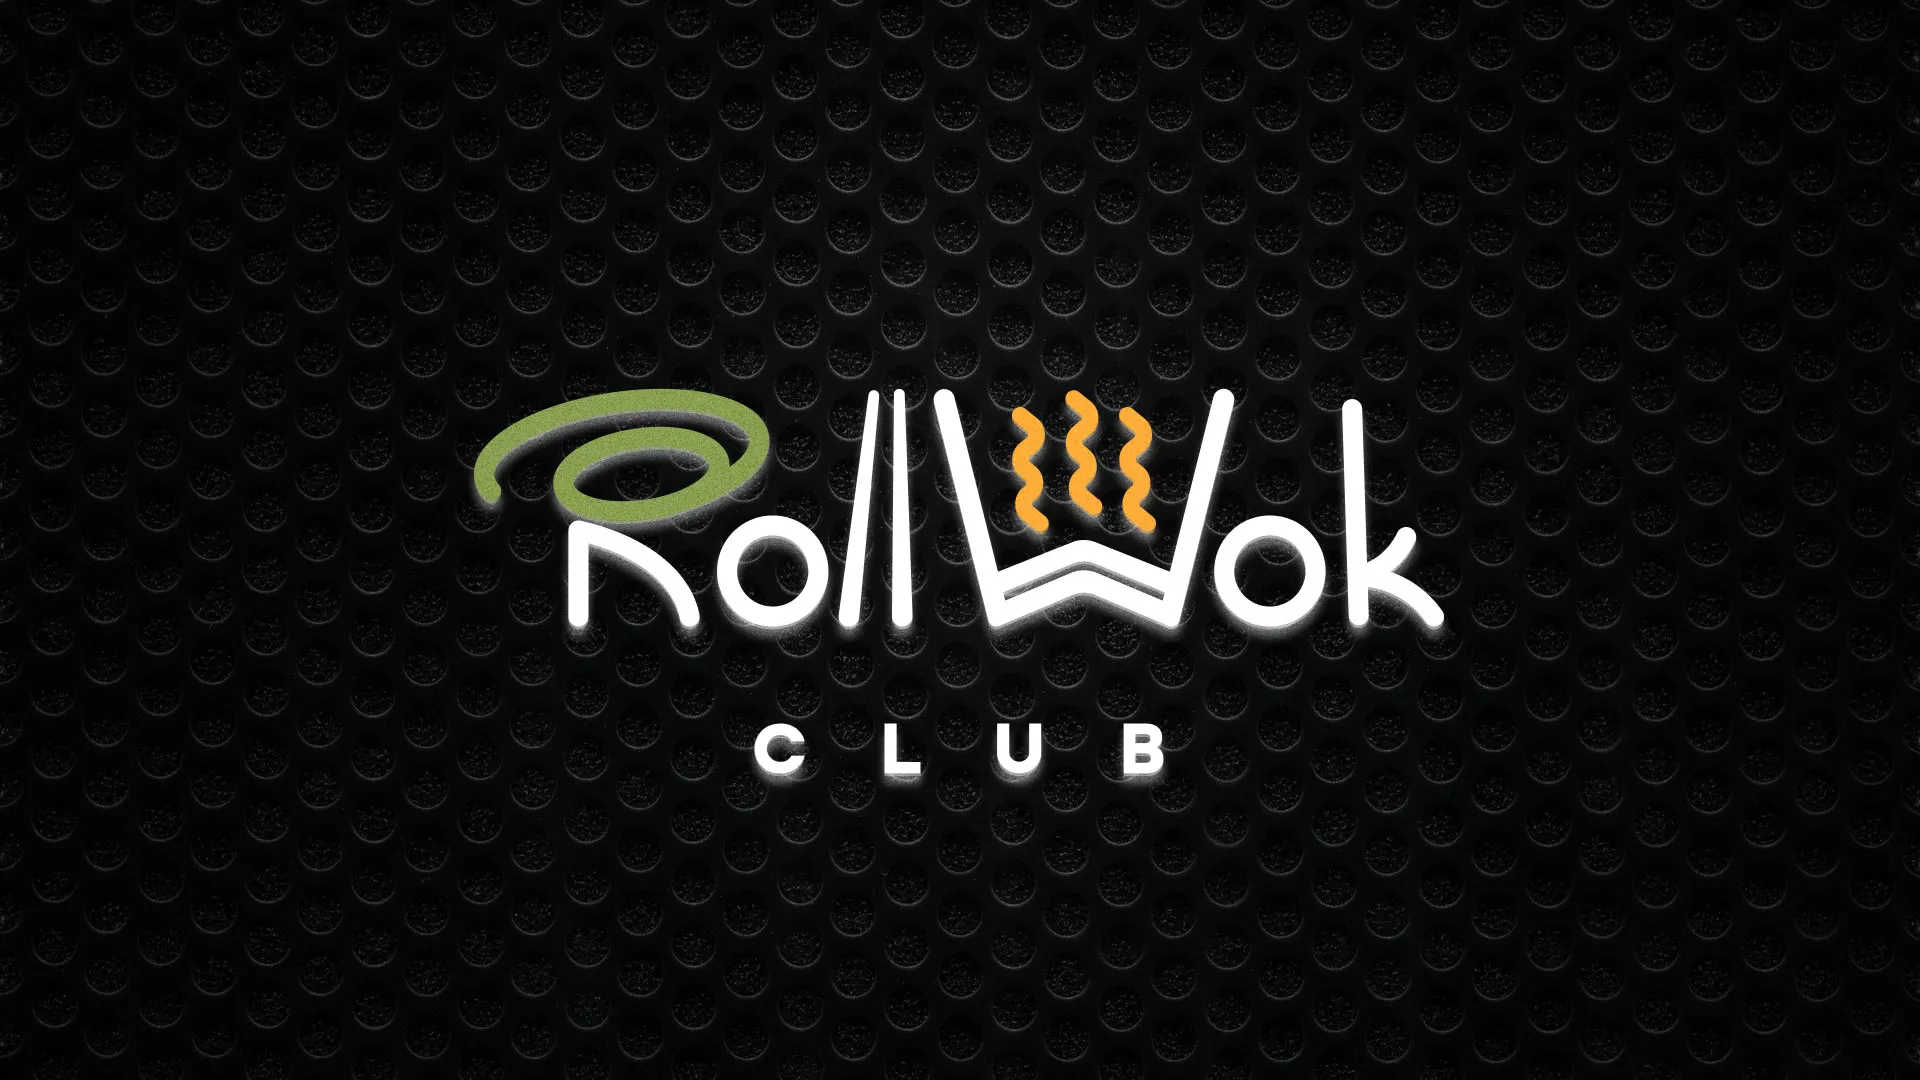 Брендирование торговых точек суши-бара «Roll Wok Club» в Мытищах